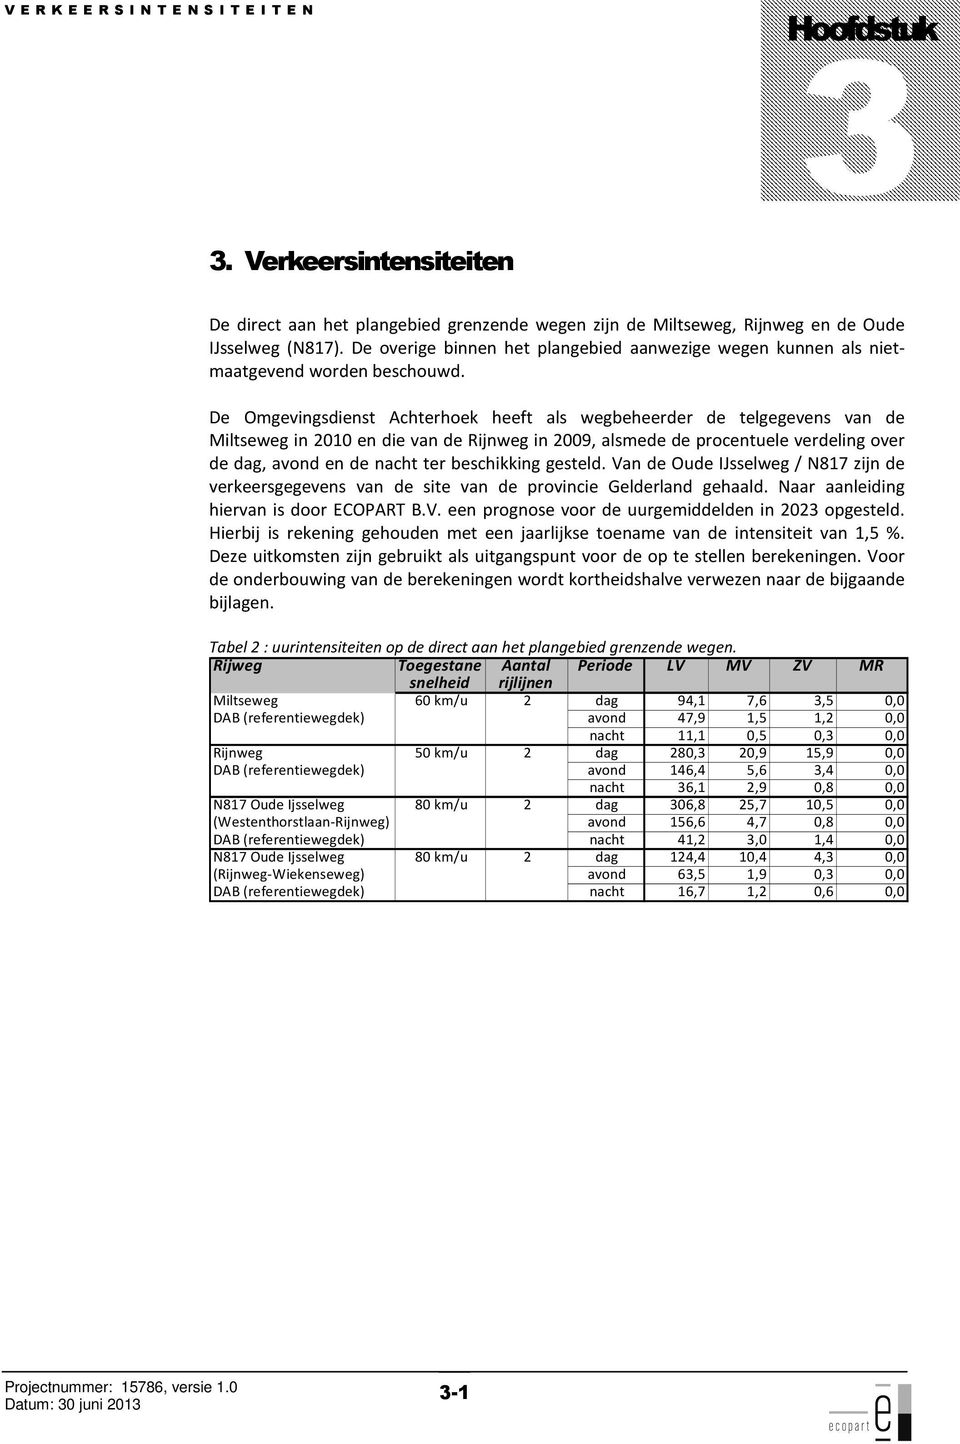 De Omgevingsdienst Achterhoek heeft als wegbeheerder de telgegevens van de Miltseweg in 2010 en die van de Rijnweg in 2009, alsmede de procentuele verdeling over de dag, avond en de nacht ter